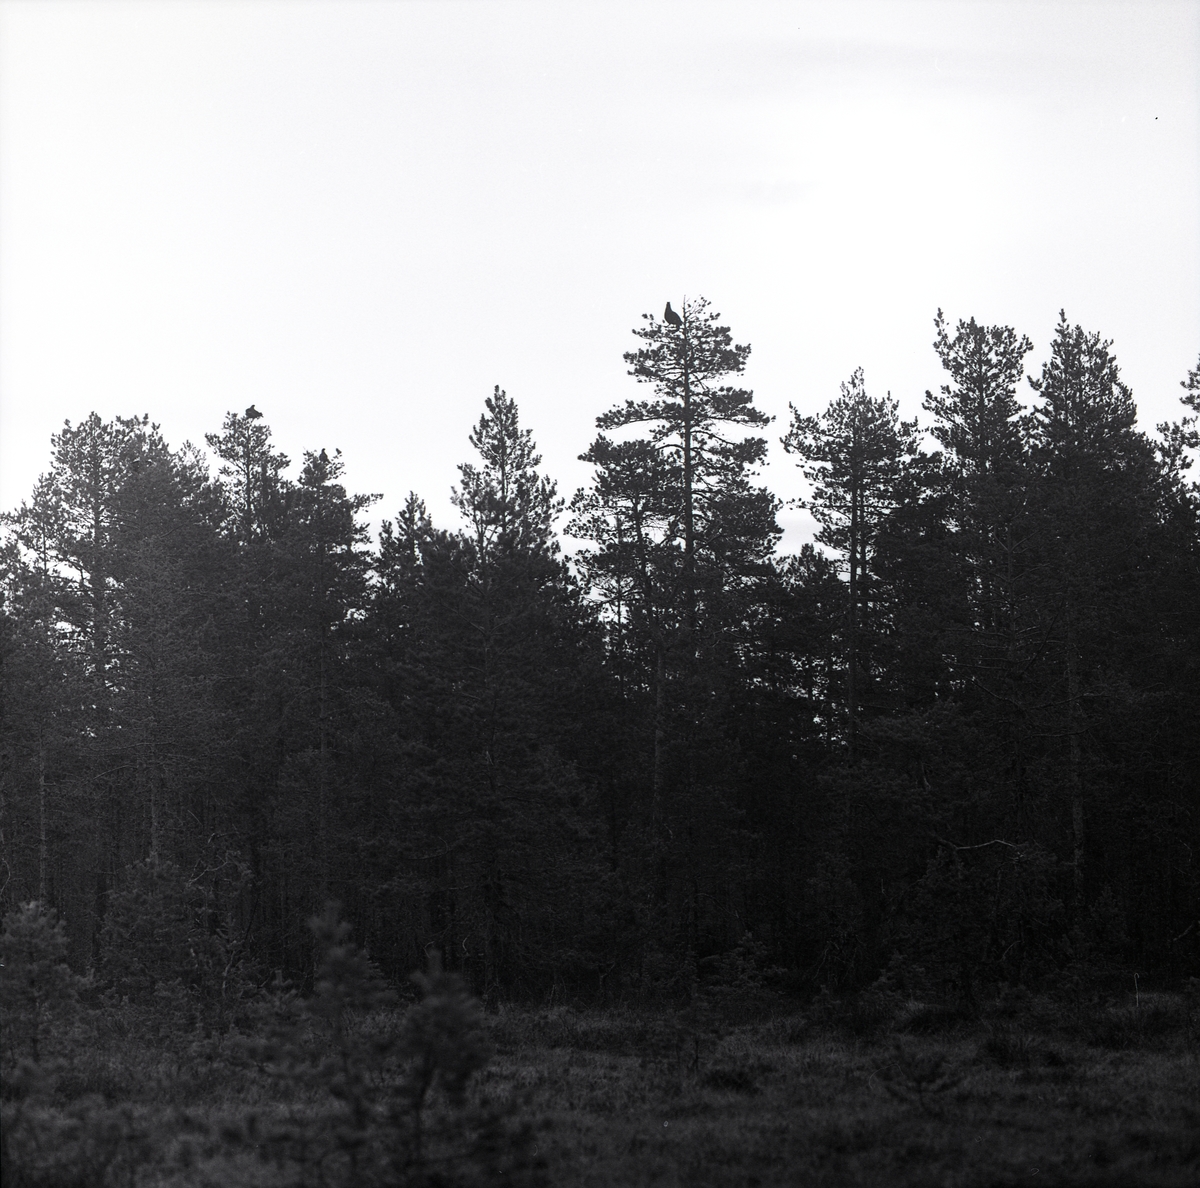 Högt i tallarnas toppar sitter tre tjädrar och tittar ut på omvärlden. Från ett närliggande hygge fotograferas skogen med fågelbesökta träd av Hilding Mickelsson 1962.